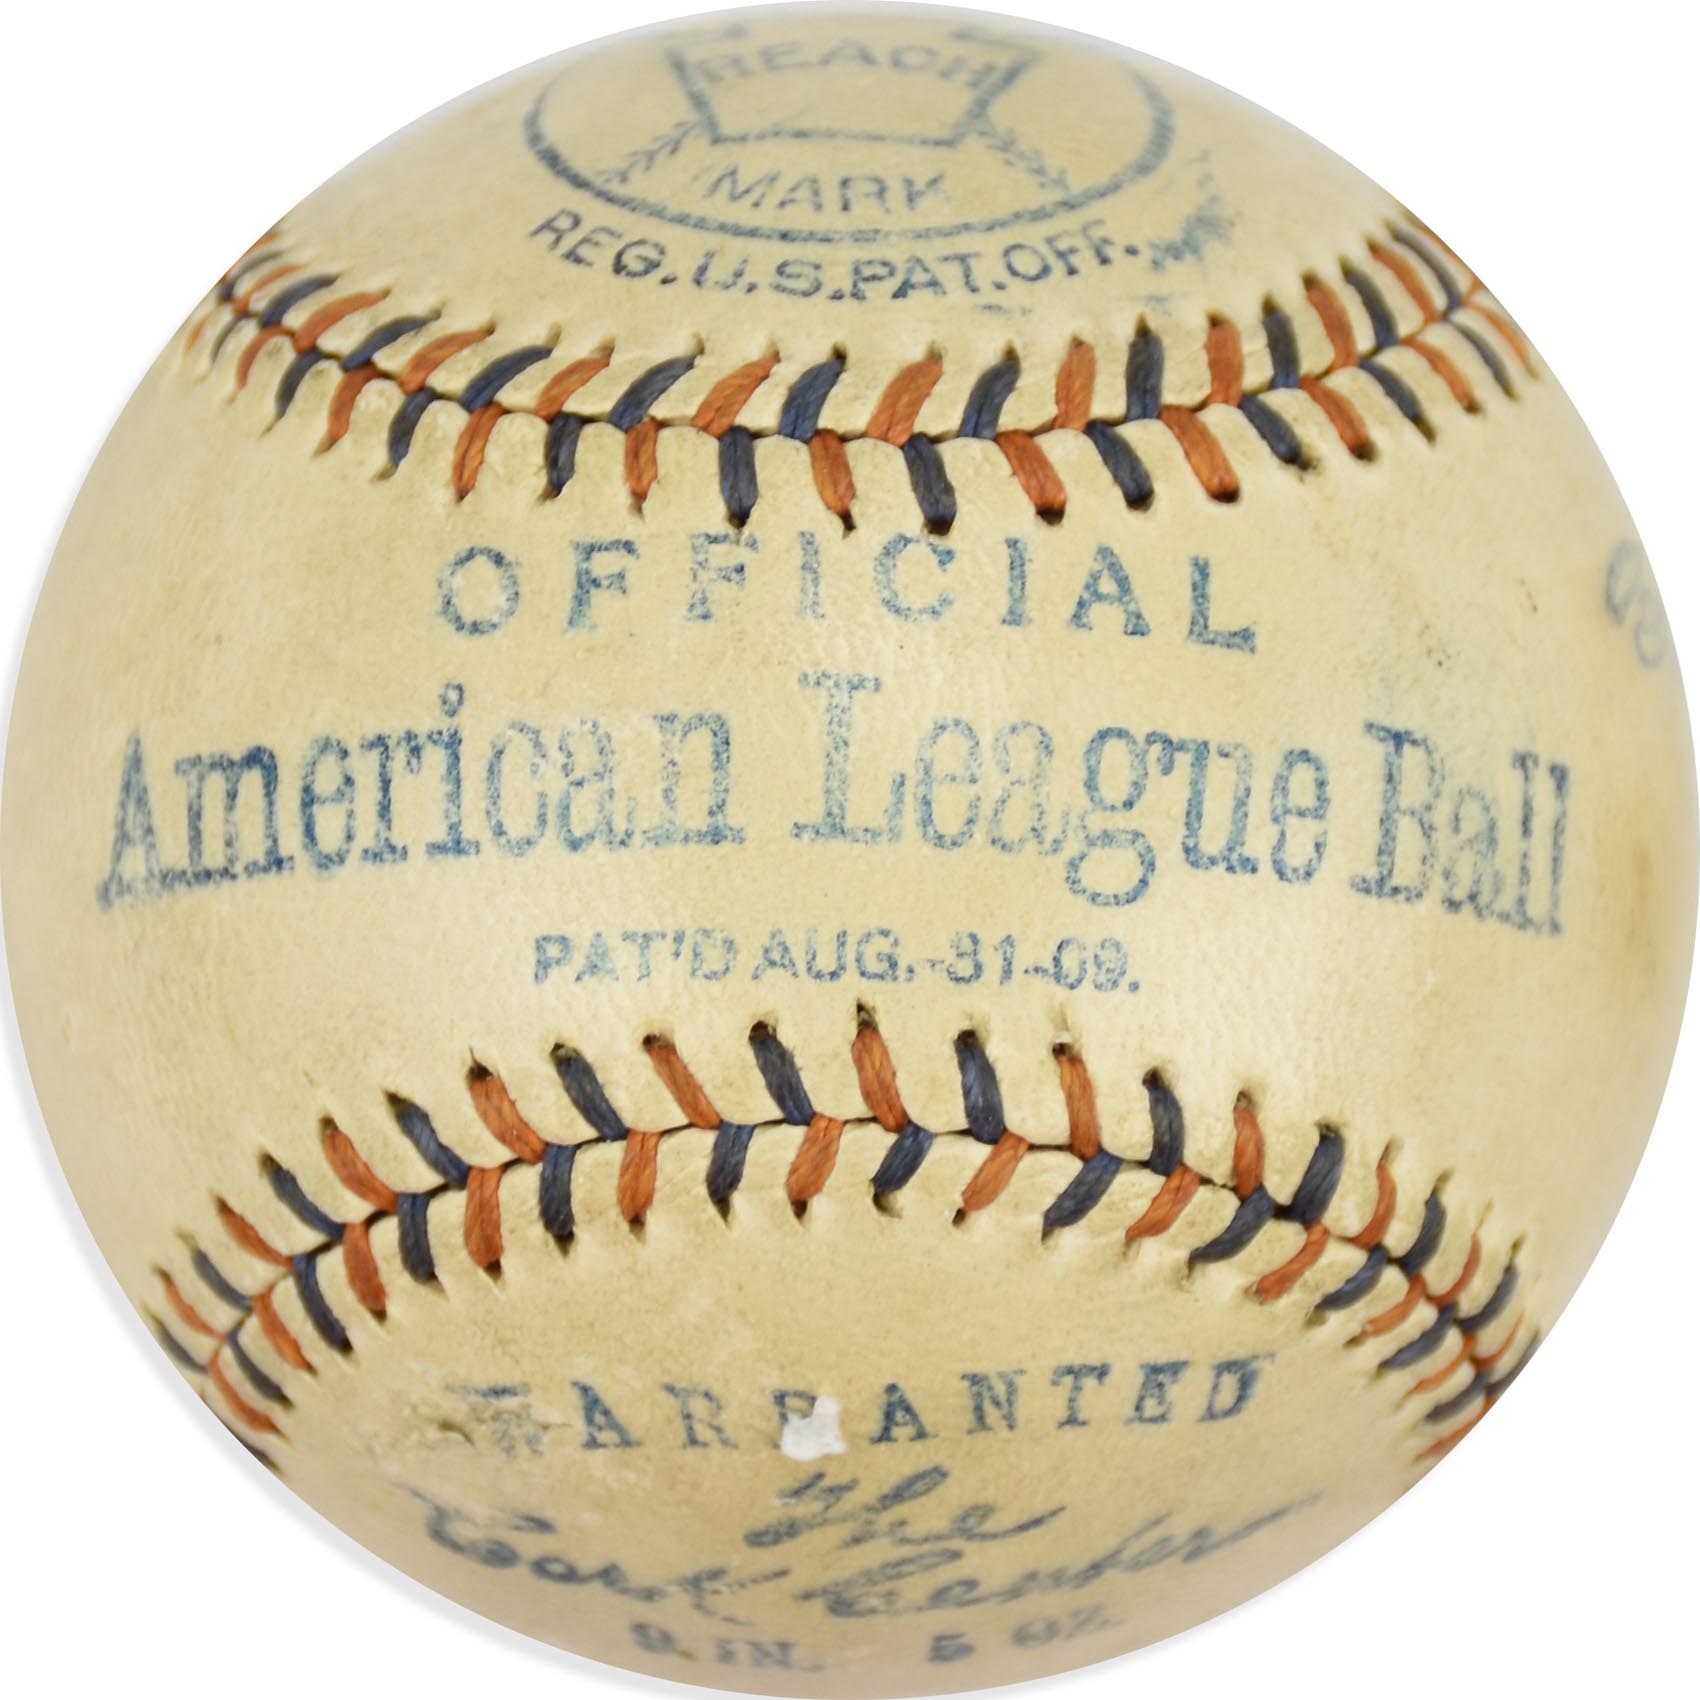 Early Baseball - 1909 Patent Ban Johnson Official American League Baseball